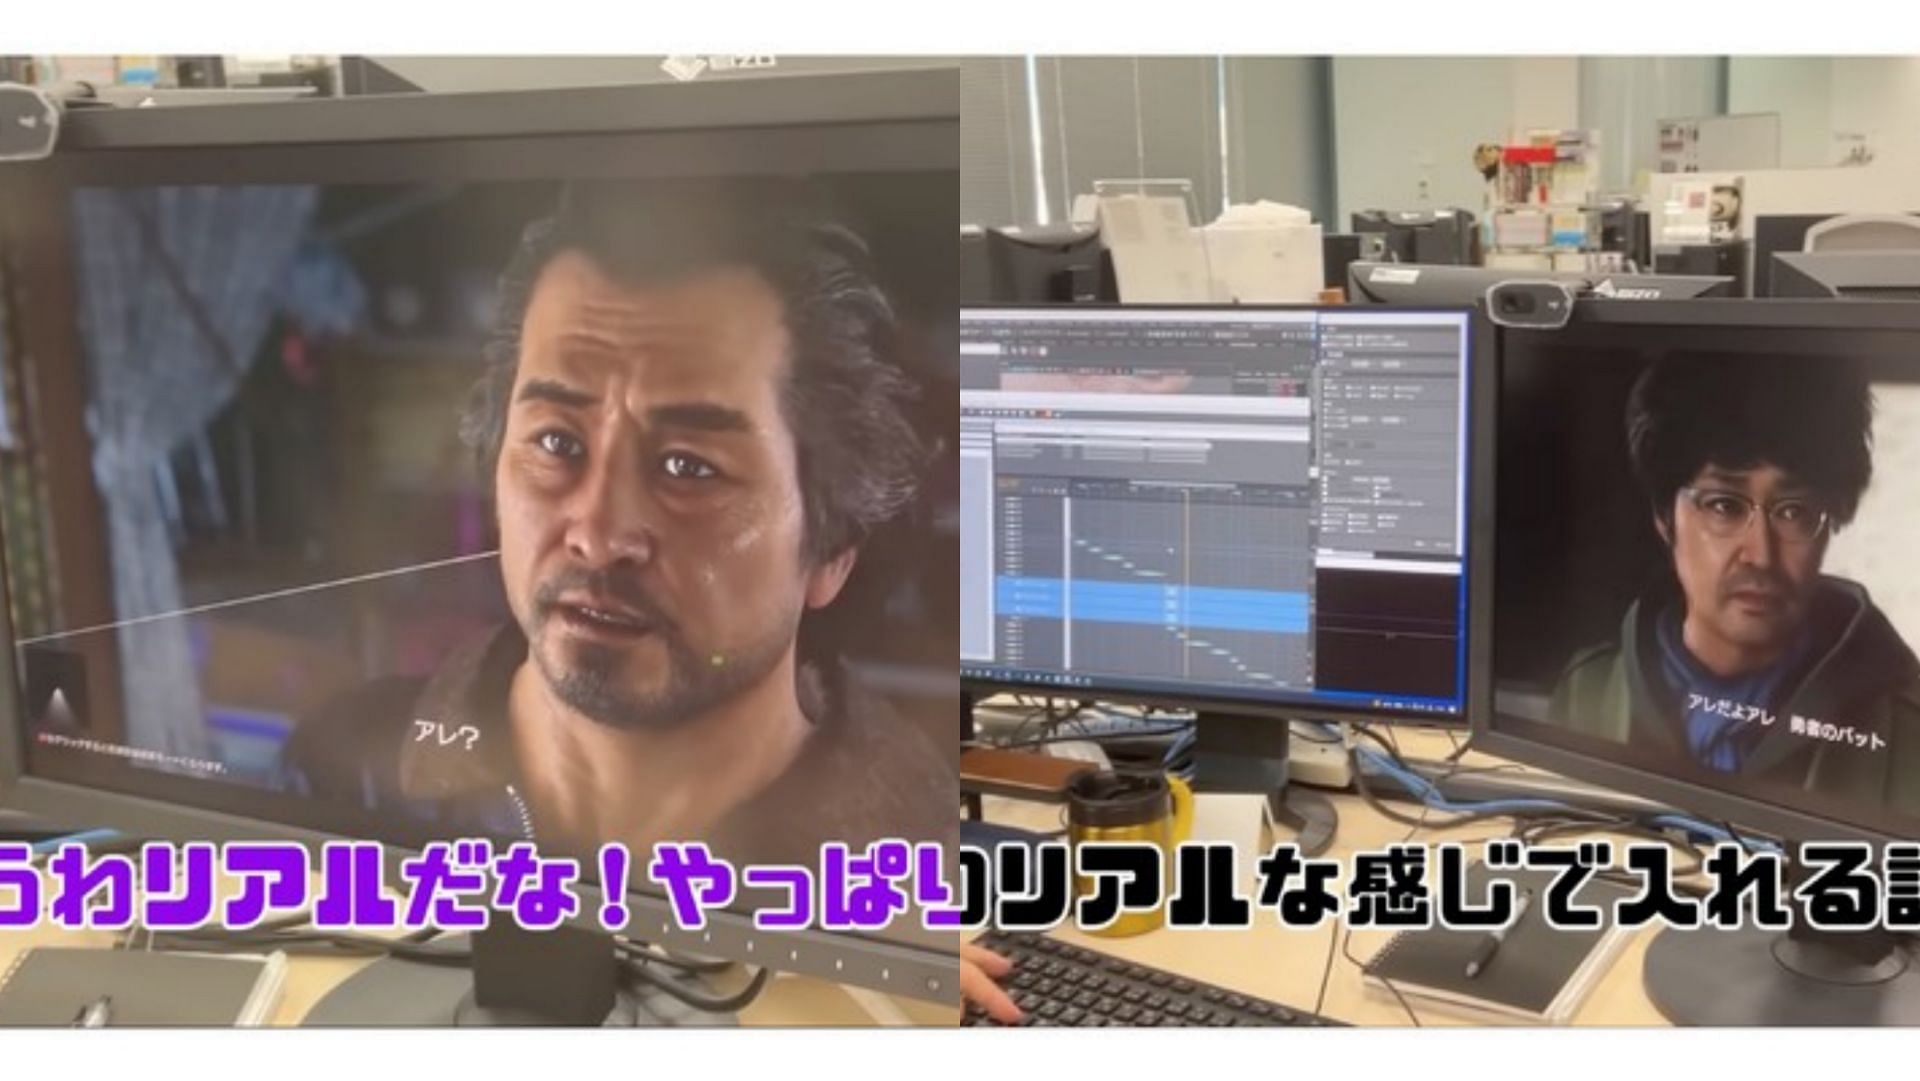 According to MMA fighter Mikuru Asakura&#039;s latest video, Yakuza 8 is in production, and he is taking part (Image via Mikuru Asakura/YouTube)